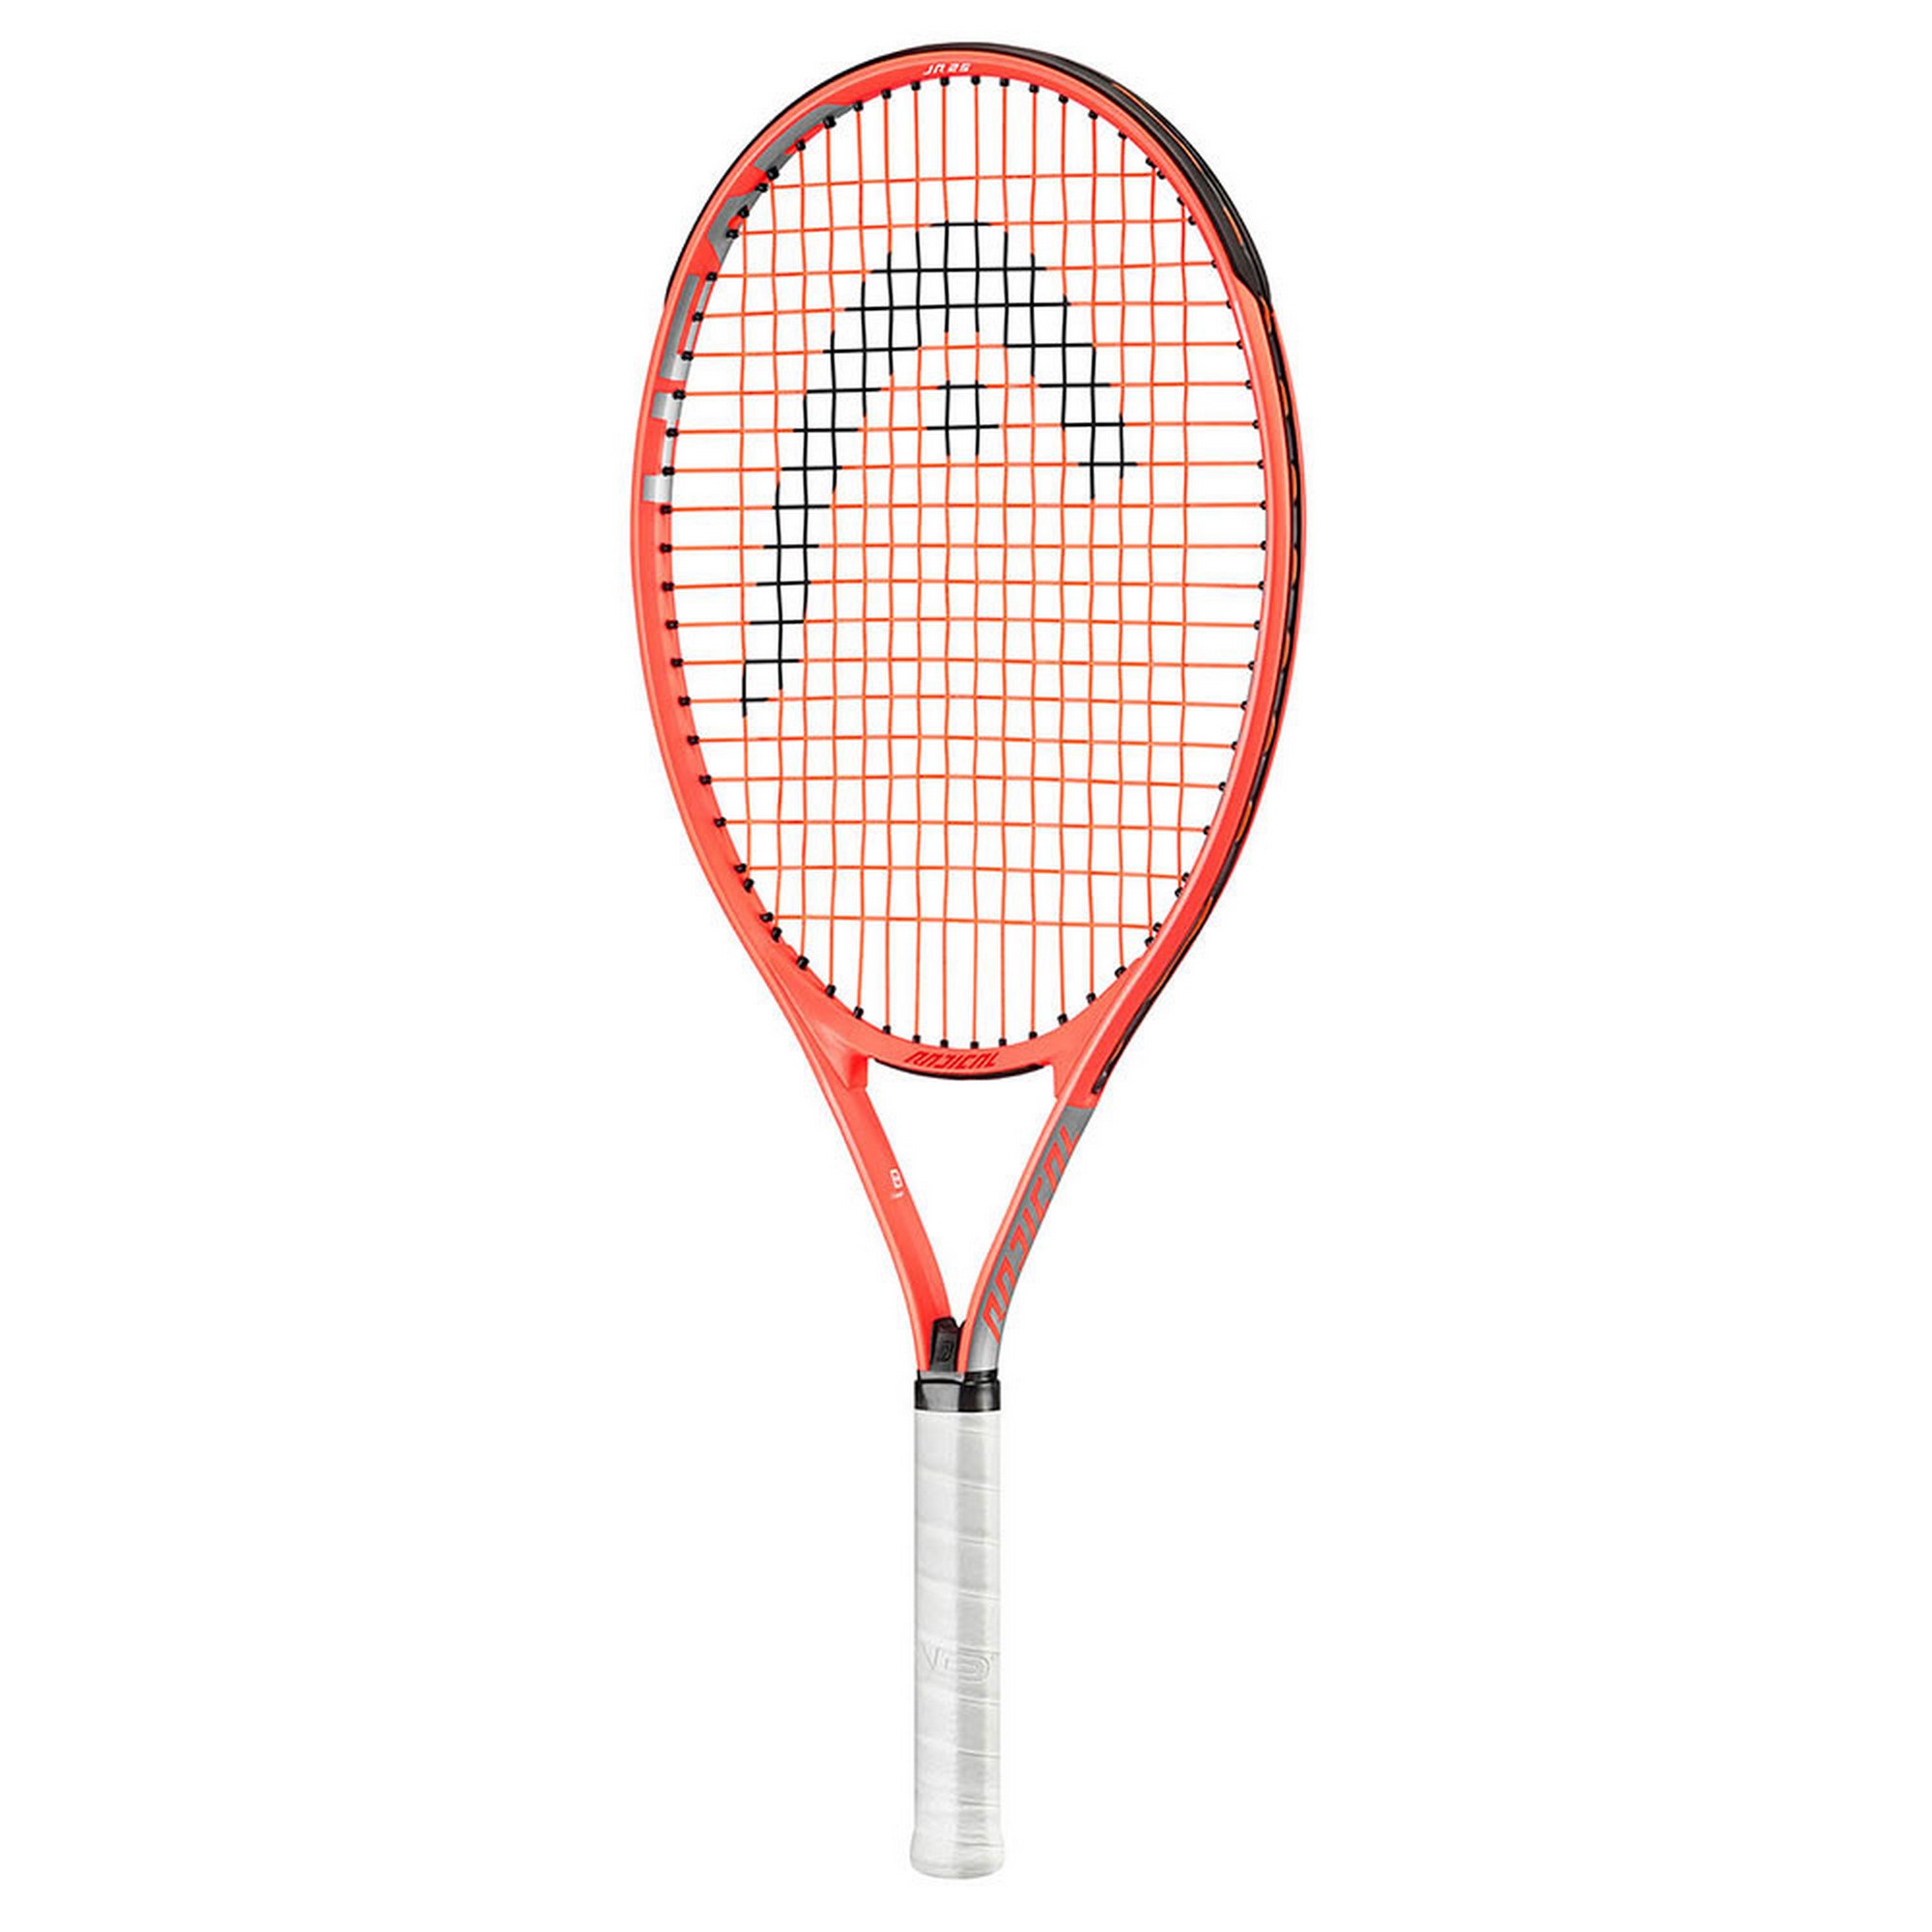 Ракетка для большого тенниса, детская Head Radical 21 Gr06 235131 оранжевый 2000_2000